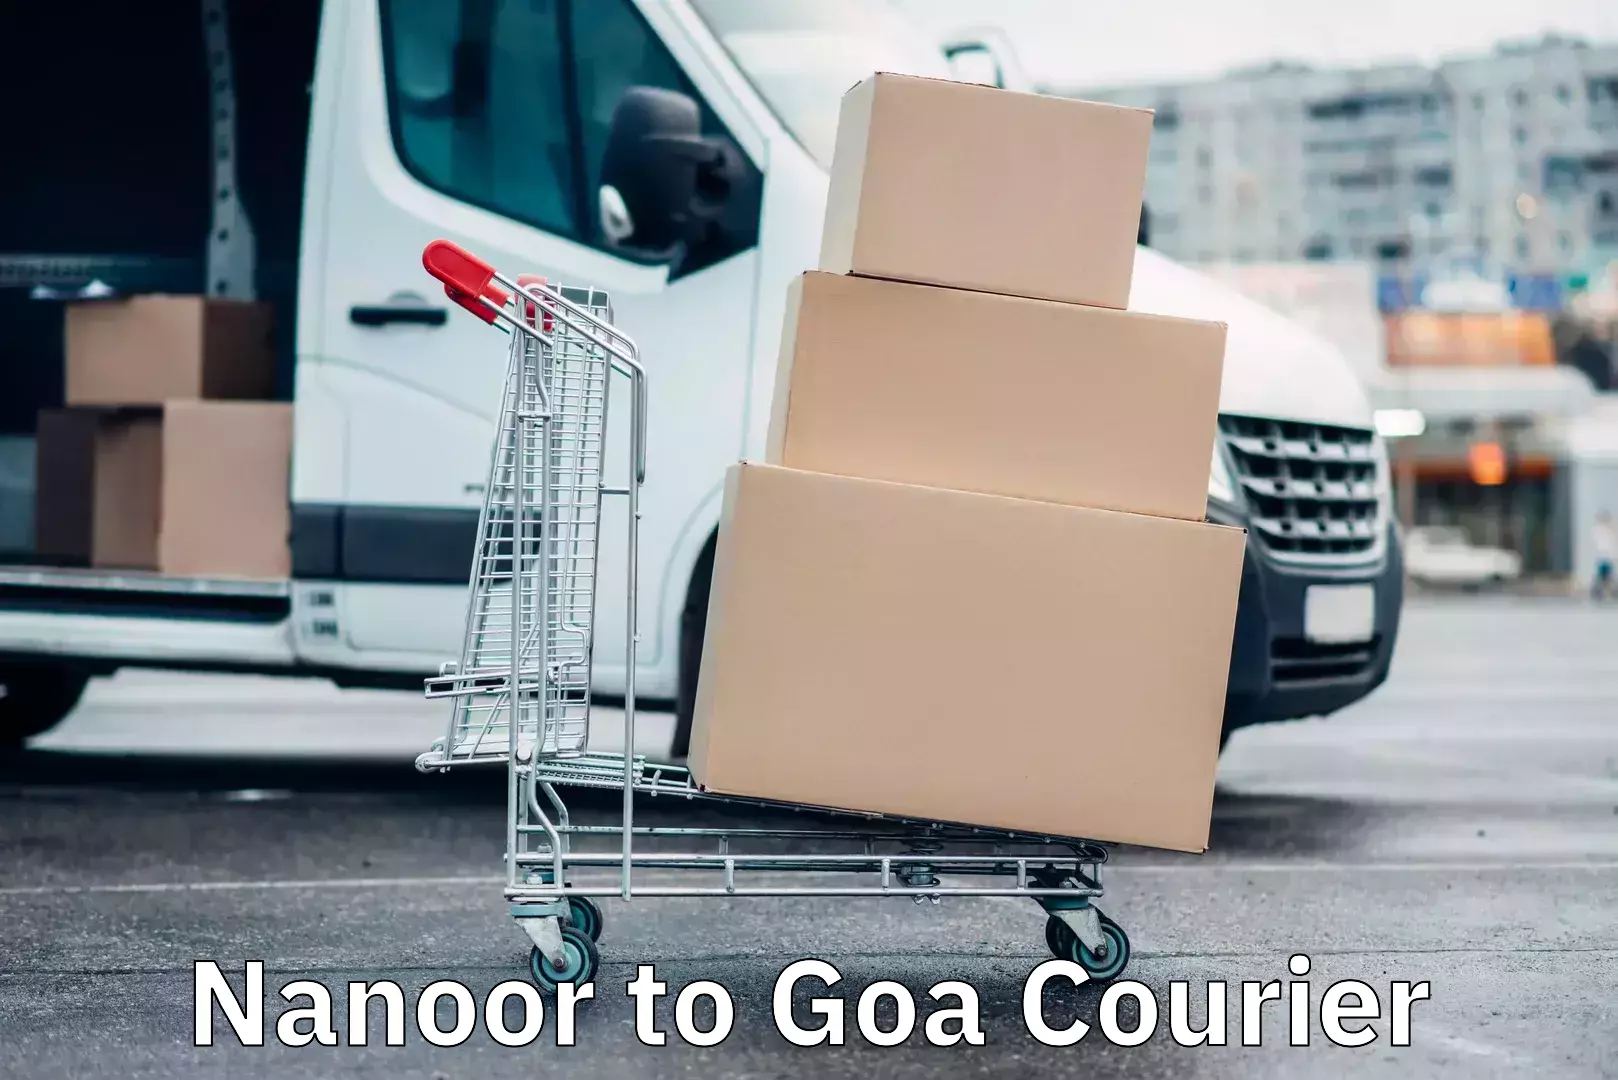 Comprehensive shipping services Nanoor to Goa